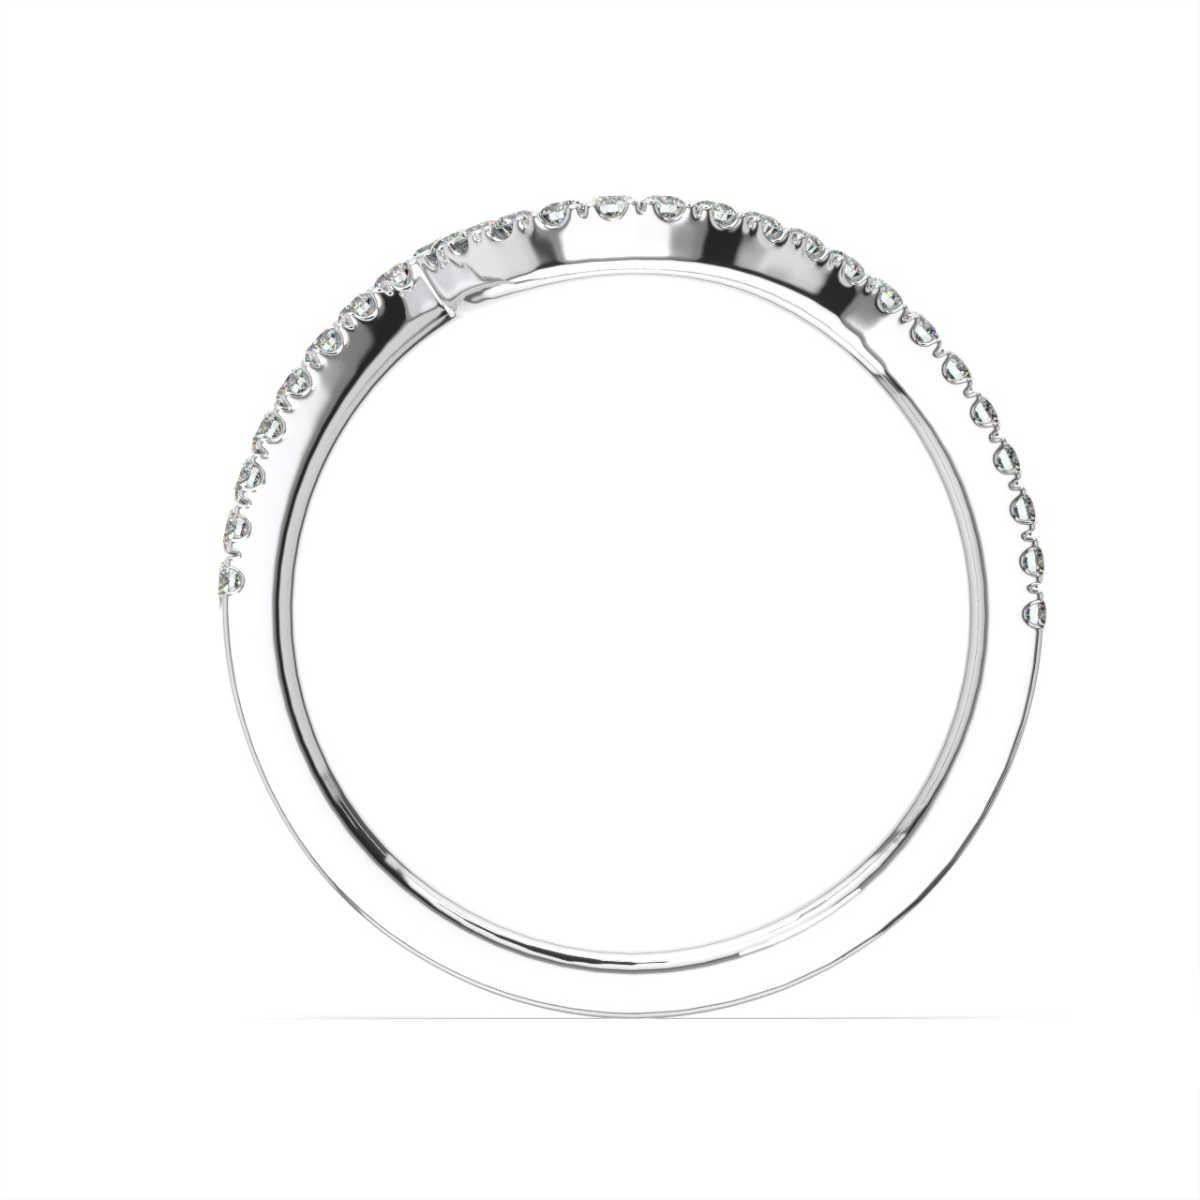 Dieser geschwungene Ring zeichnet sich durch funkelnde, in Mikrozacken gefasste Diamanten entlang des oberen Teils des zarten Bandes aus. Dieser Ring passt zu unserem Noga-Ring und muss entsprechend den Maßen des mittleren Edelsteins angepasst